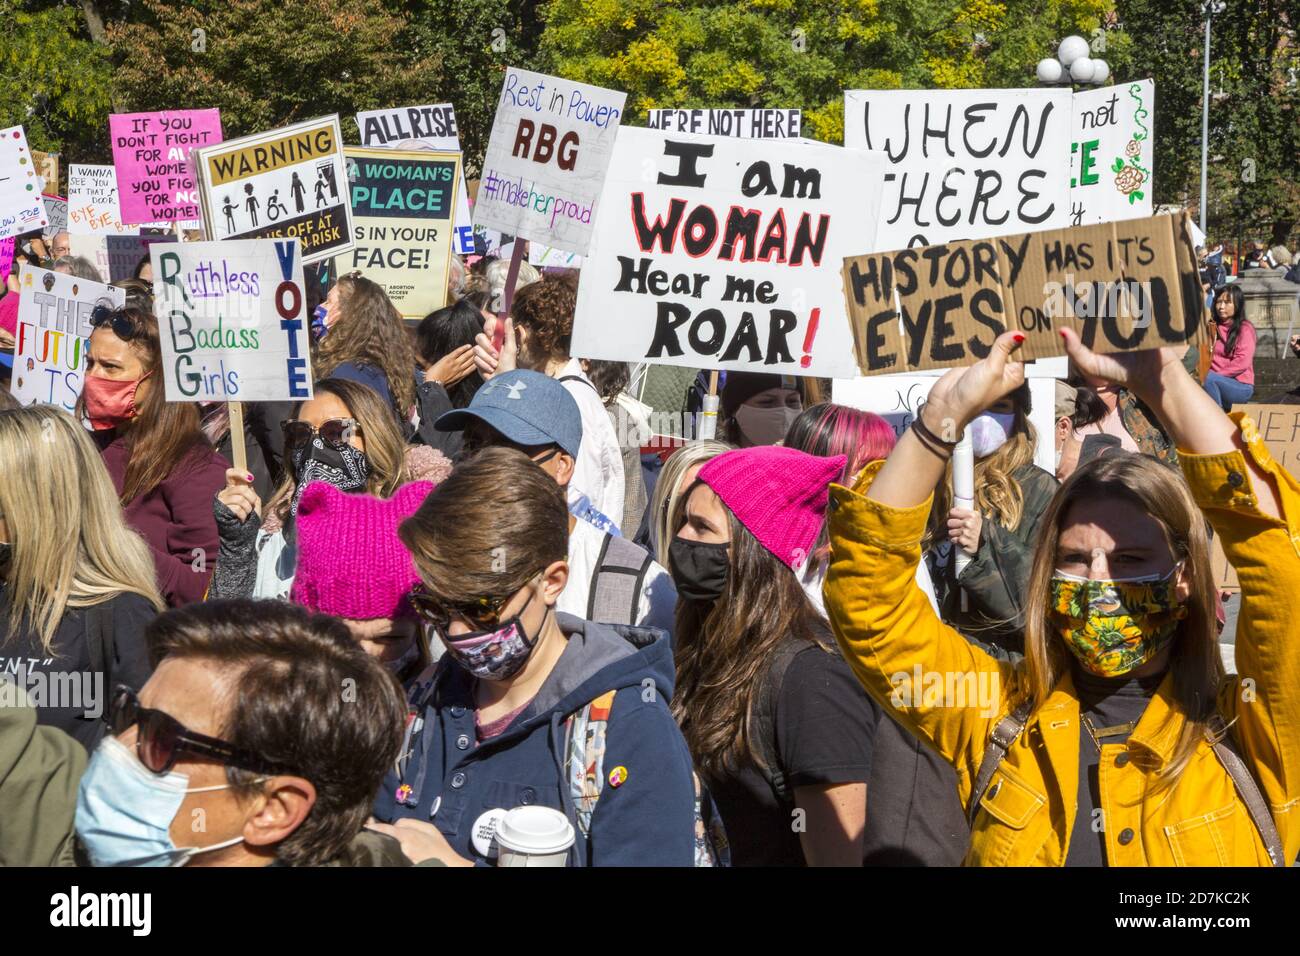 Los hombres marchan con las mujeres en muchas ciudades alrededor del mundo en una marcha Internacional de mujeres el 17 de octubre de 2020 hablando en favor de los derechos de las mujeres, así como de todas las formas de injusticia alrededor del mundo. (Ciudad de Nueva York) Foto de stock